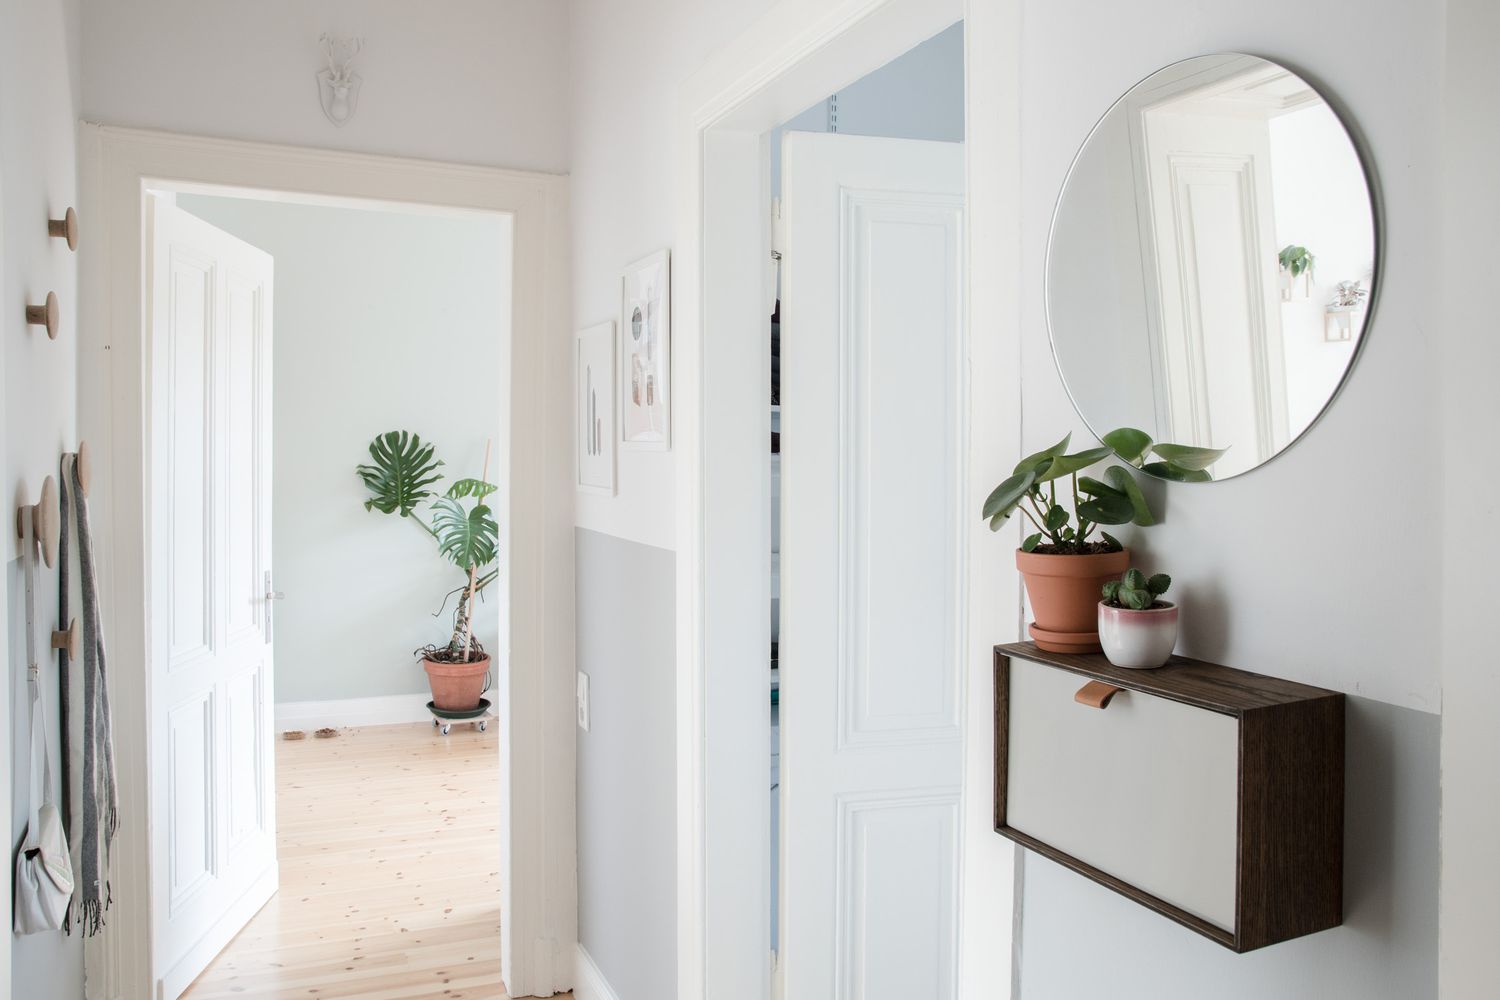 Entrada minimalista com espelho redondo, plantas e armazenamento montado na parede